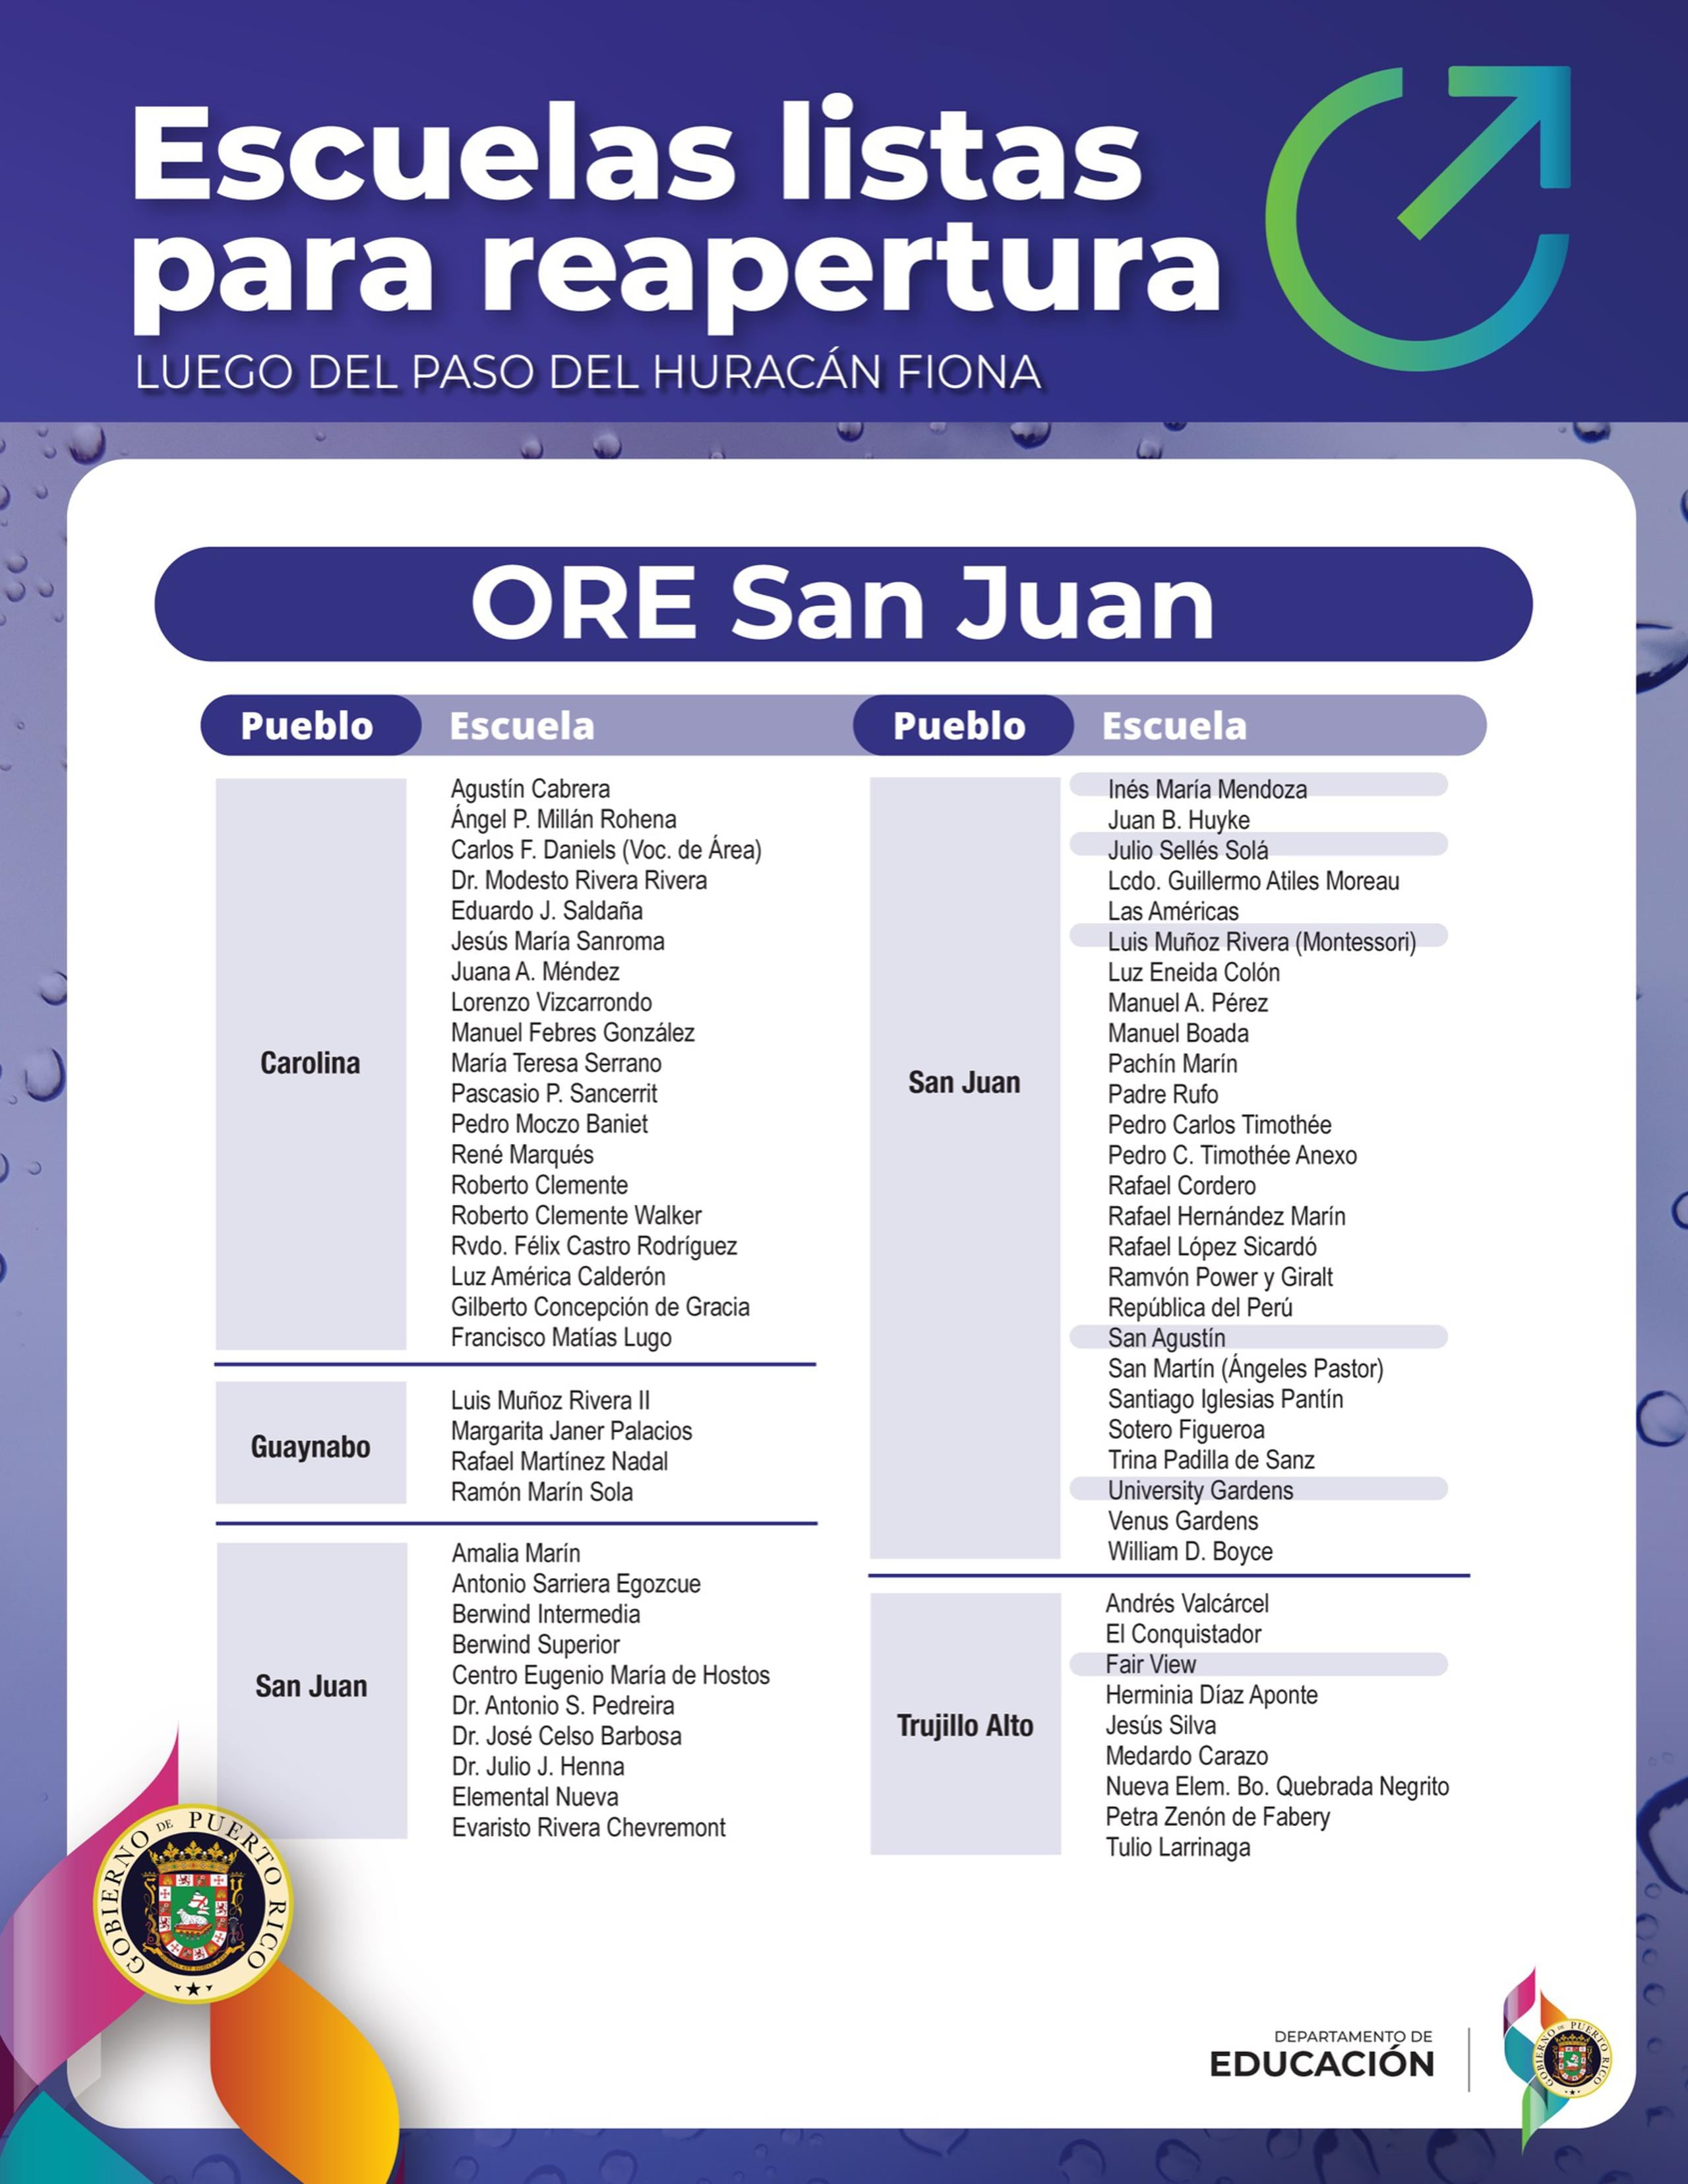 En el área de San Juan abrirán 68 instituciones educativas.